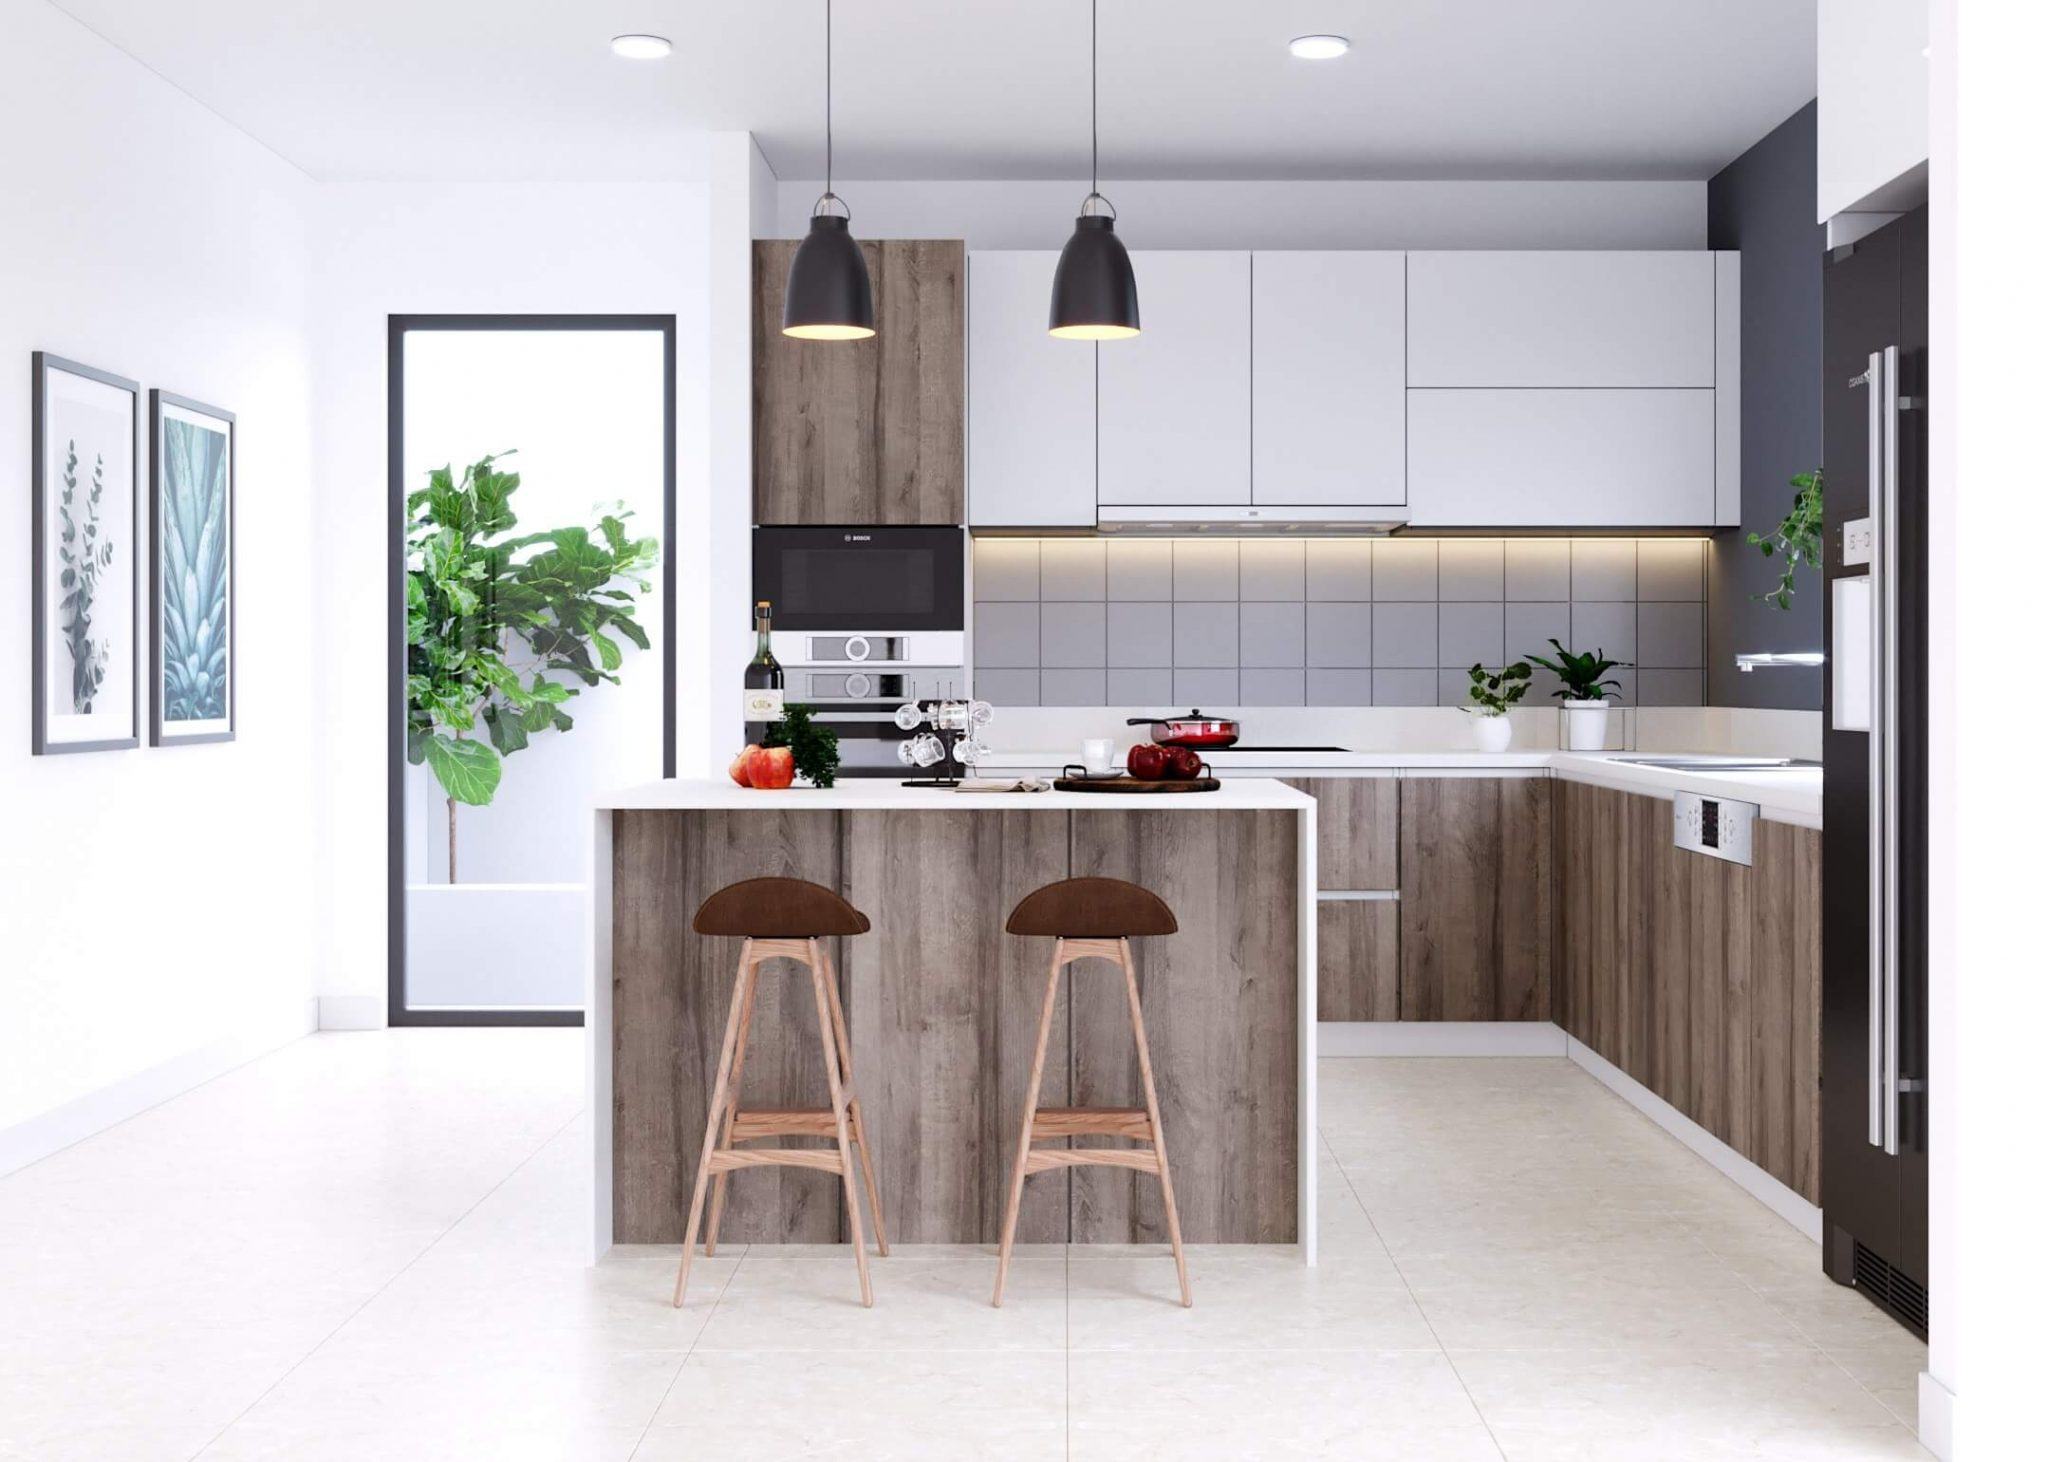 Nội thất phòng bếp: Tận hưởng một căn phòng bếp đẹp lung linh với nội thất sang trọng, tinh tế và tiện nghi, đem lại cho bạn một cuộc sống đầy đủ tiện ích, độc đáo và đẳng cấp.